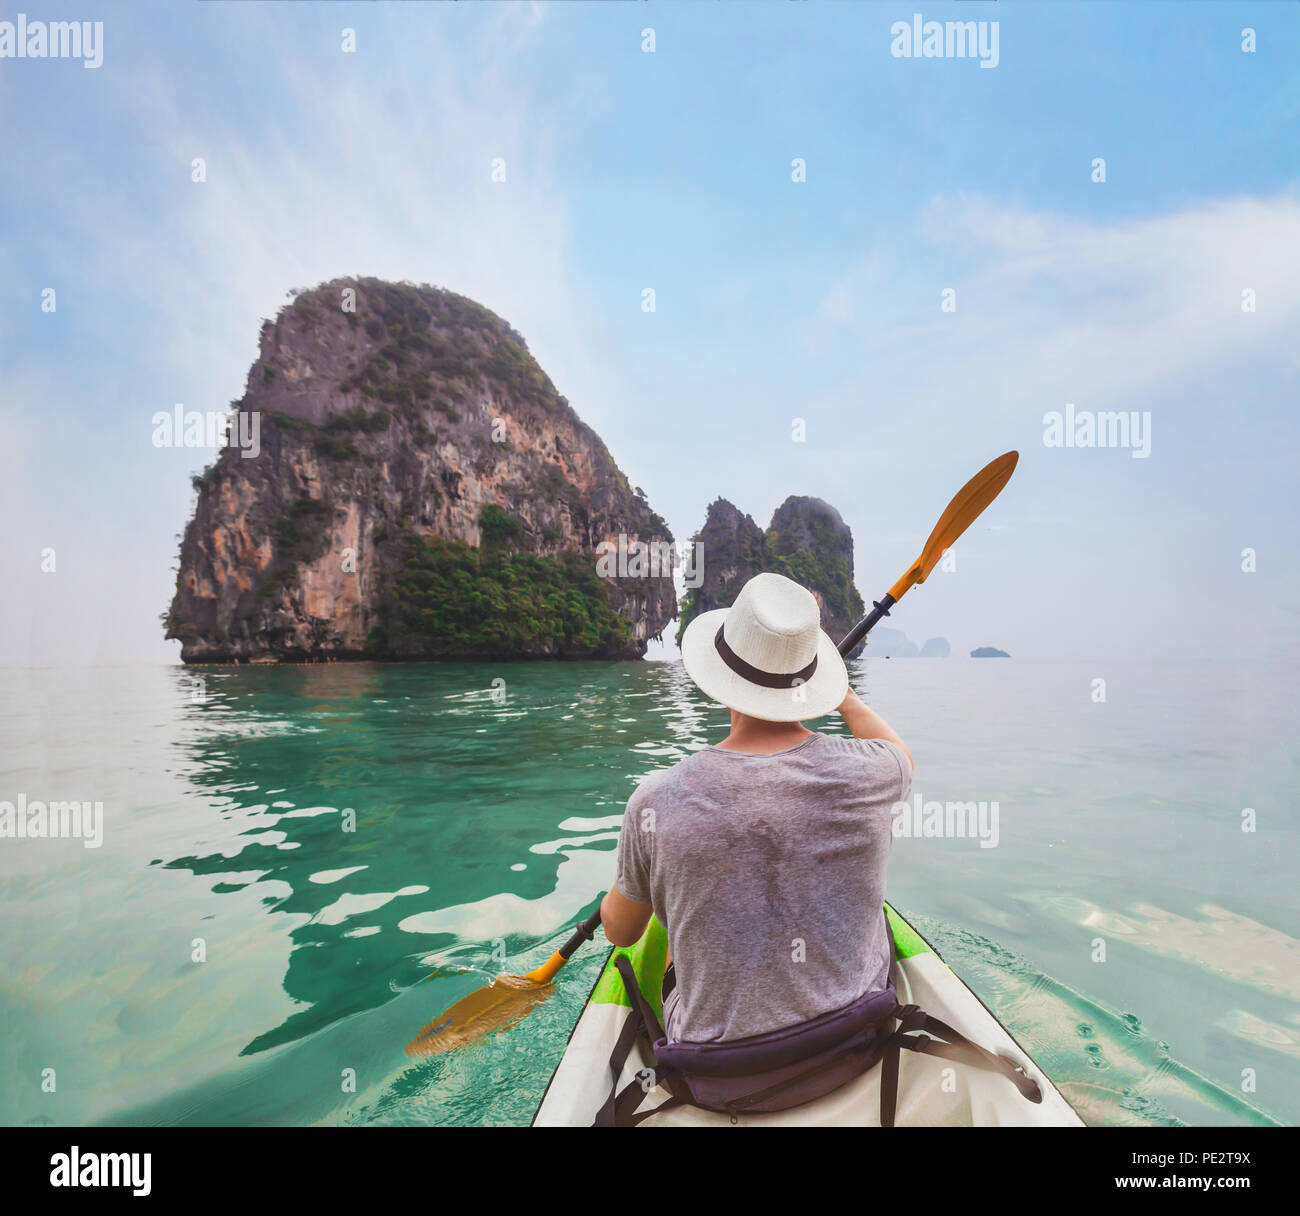 kayaking in Krabi beach, Thailand, leisure holidays summer adventure activity Stock Photo